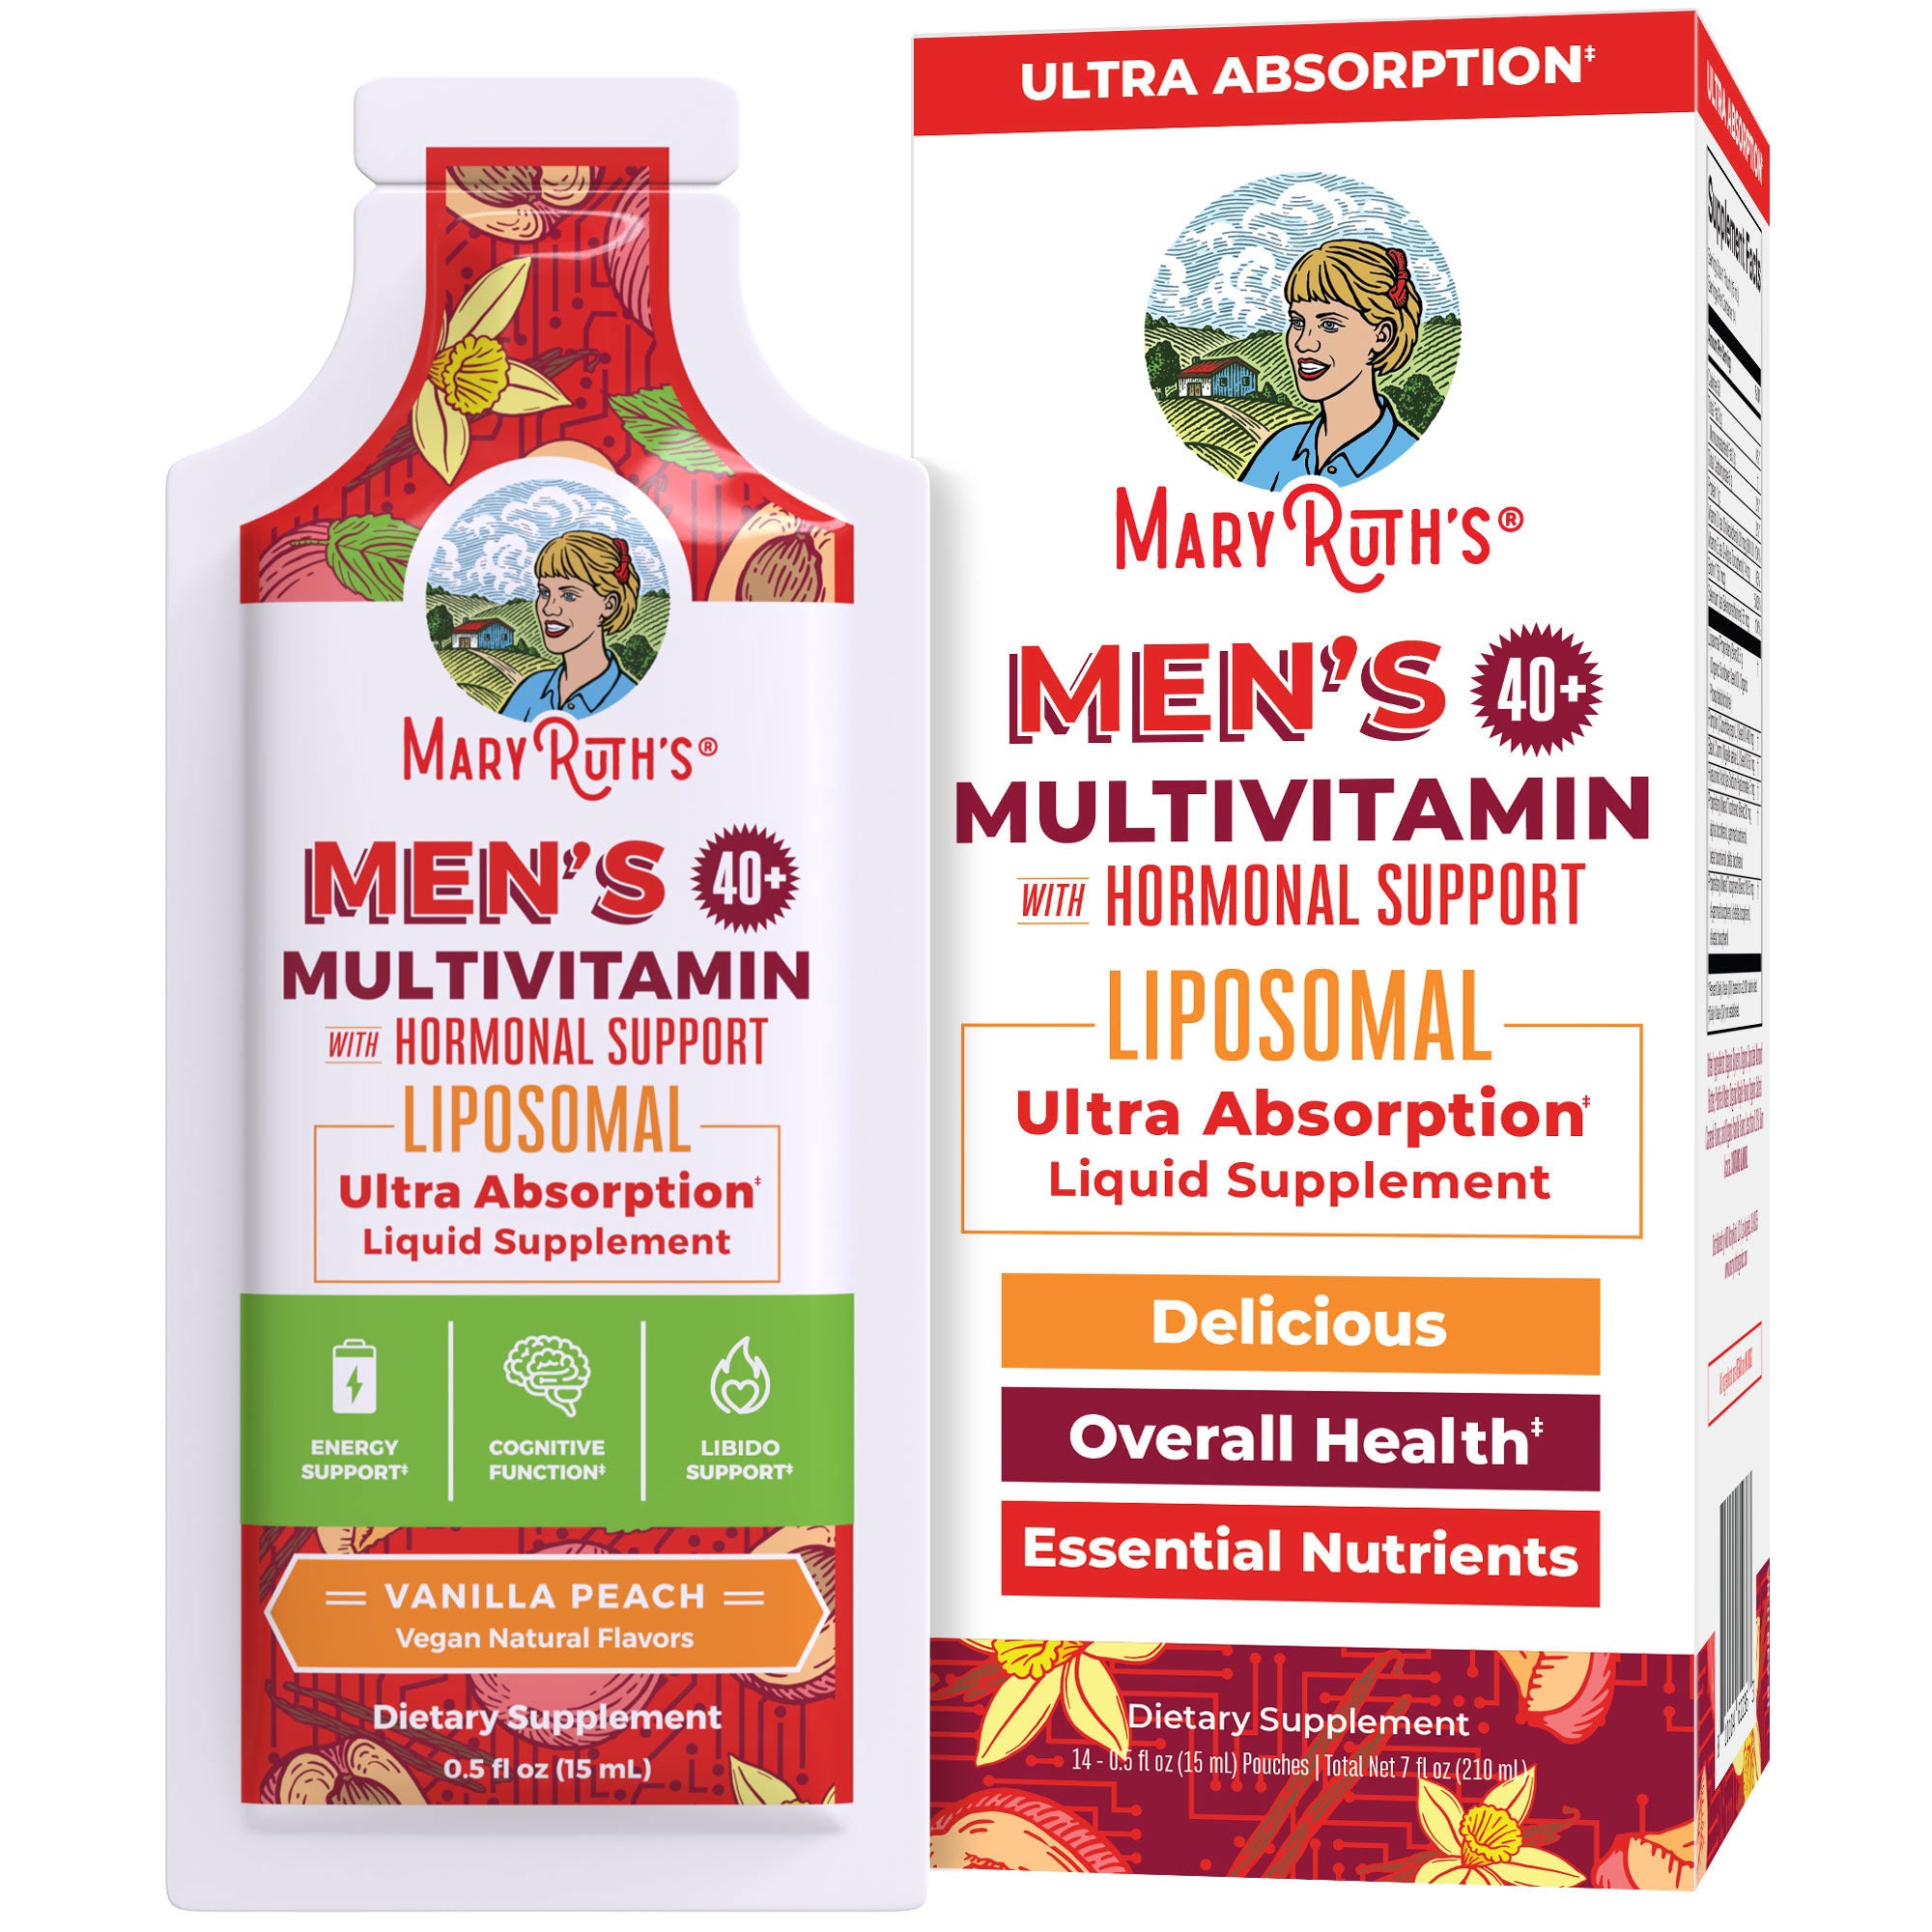 Men's 40+ Multivitamin Liposomal Box